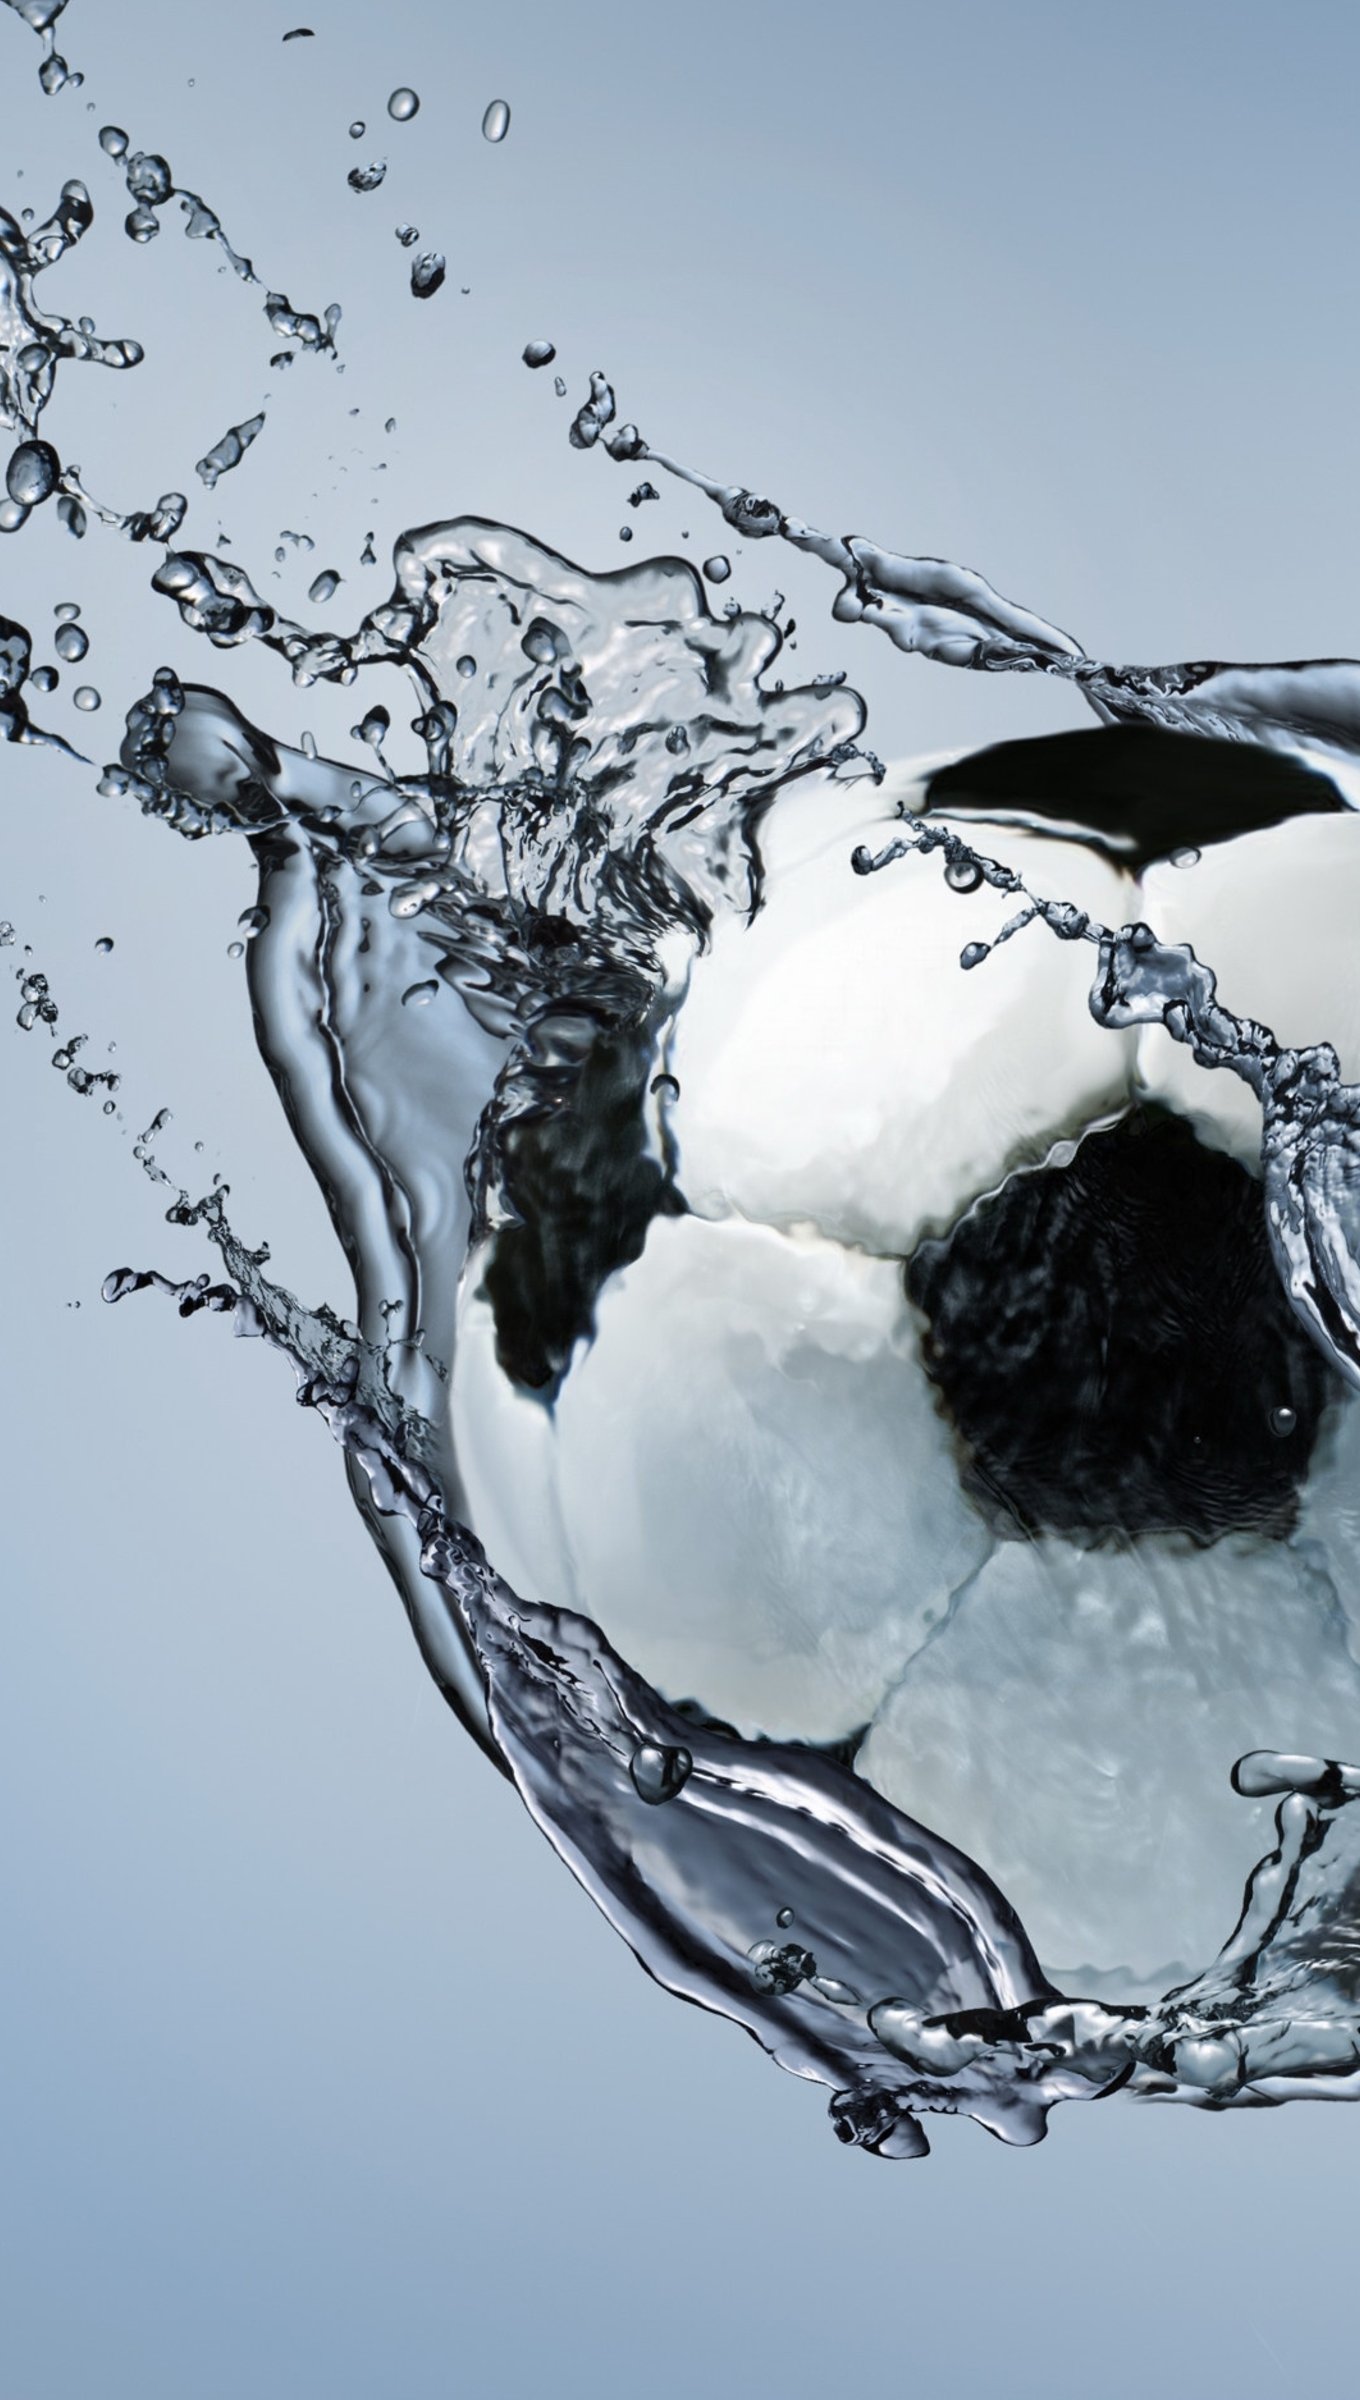 Wallpaper Soccer Ball going through water Vertical